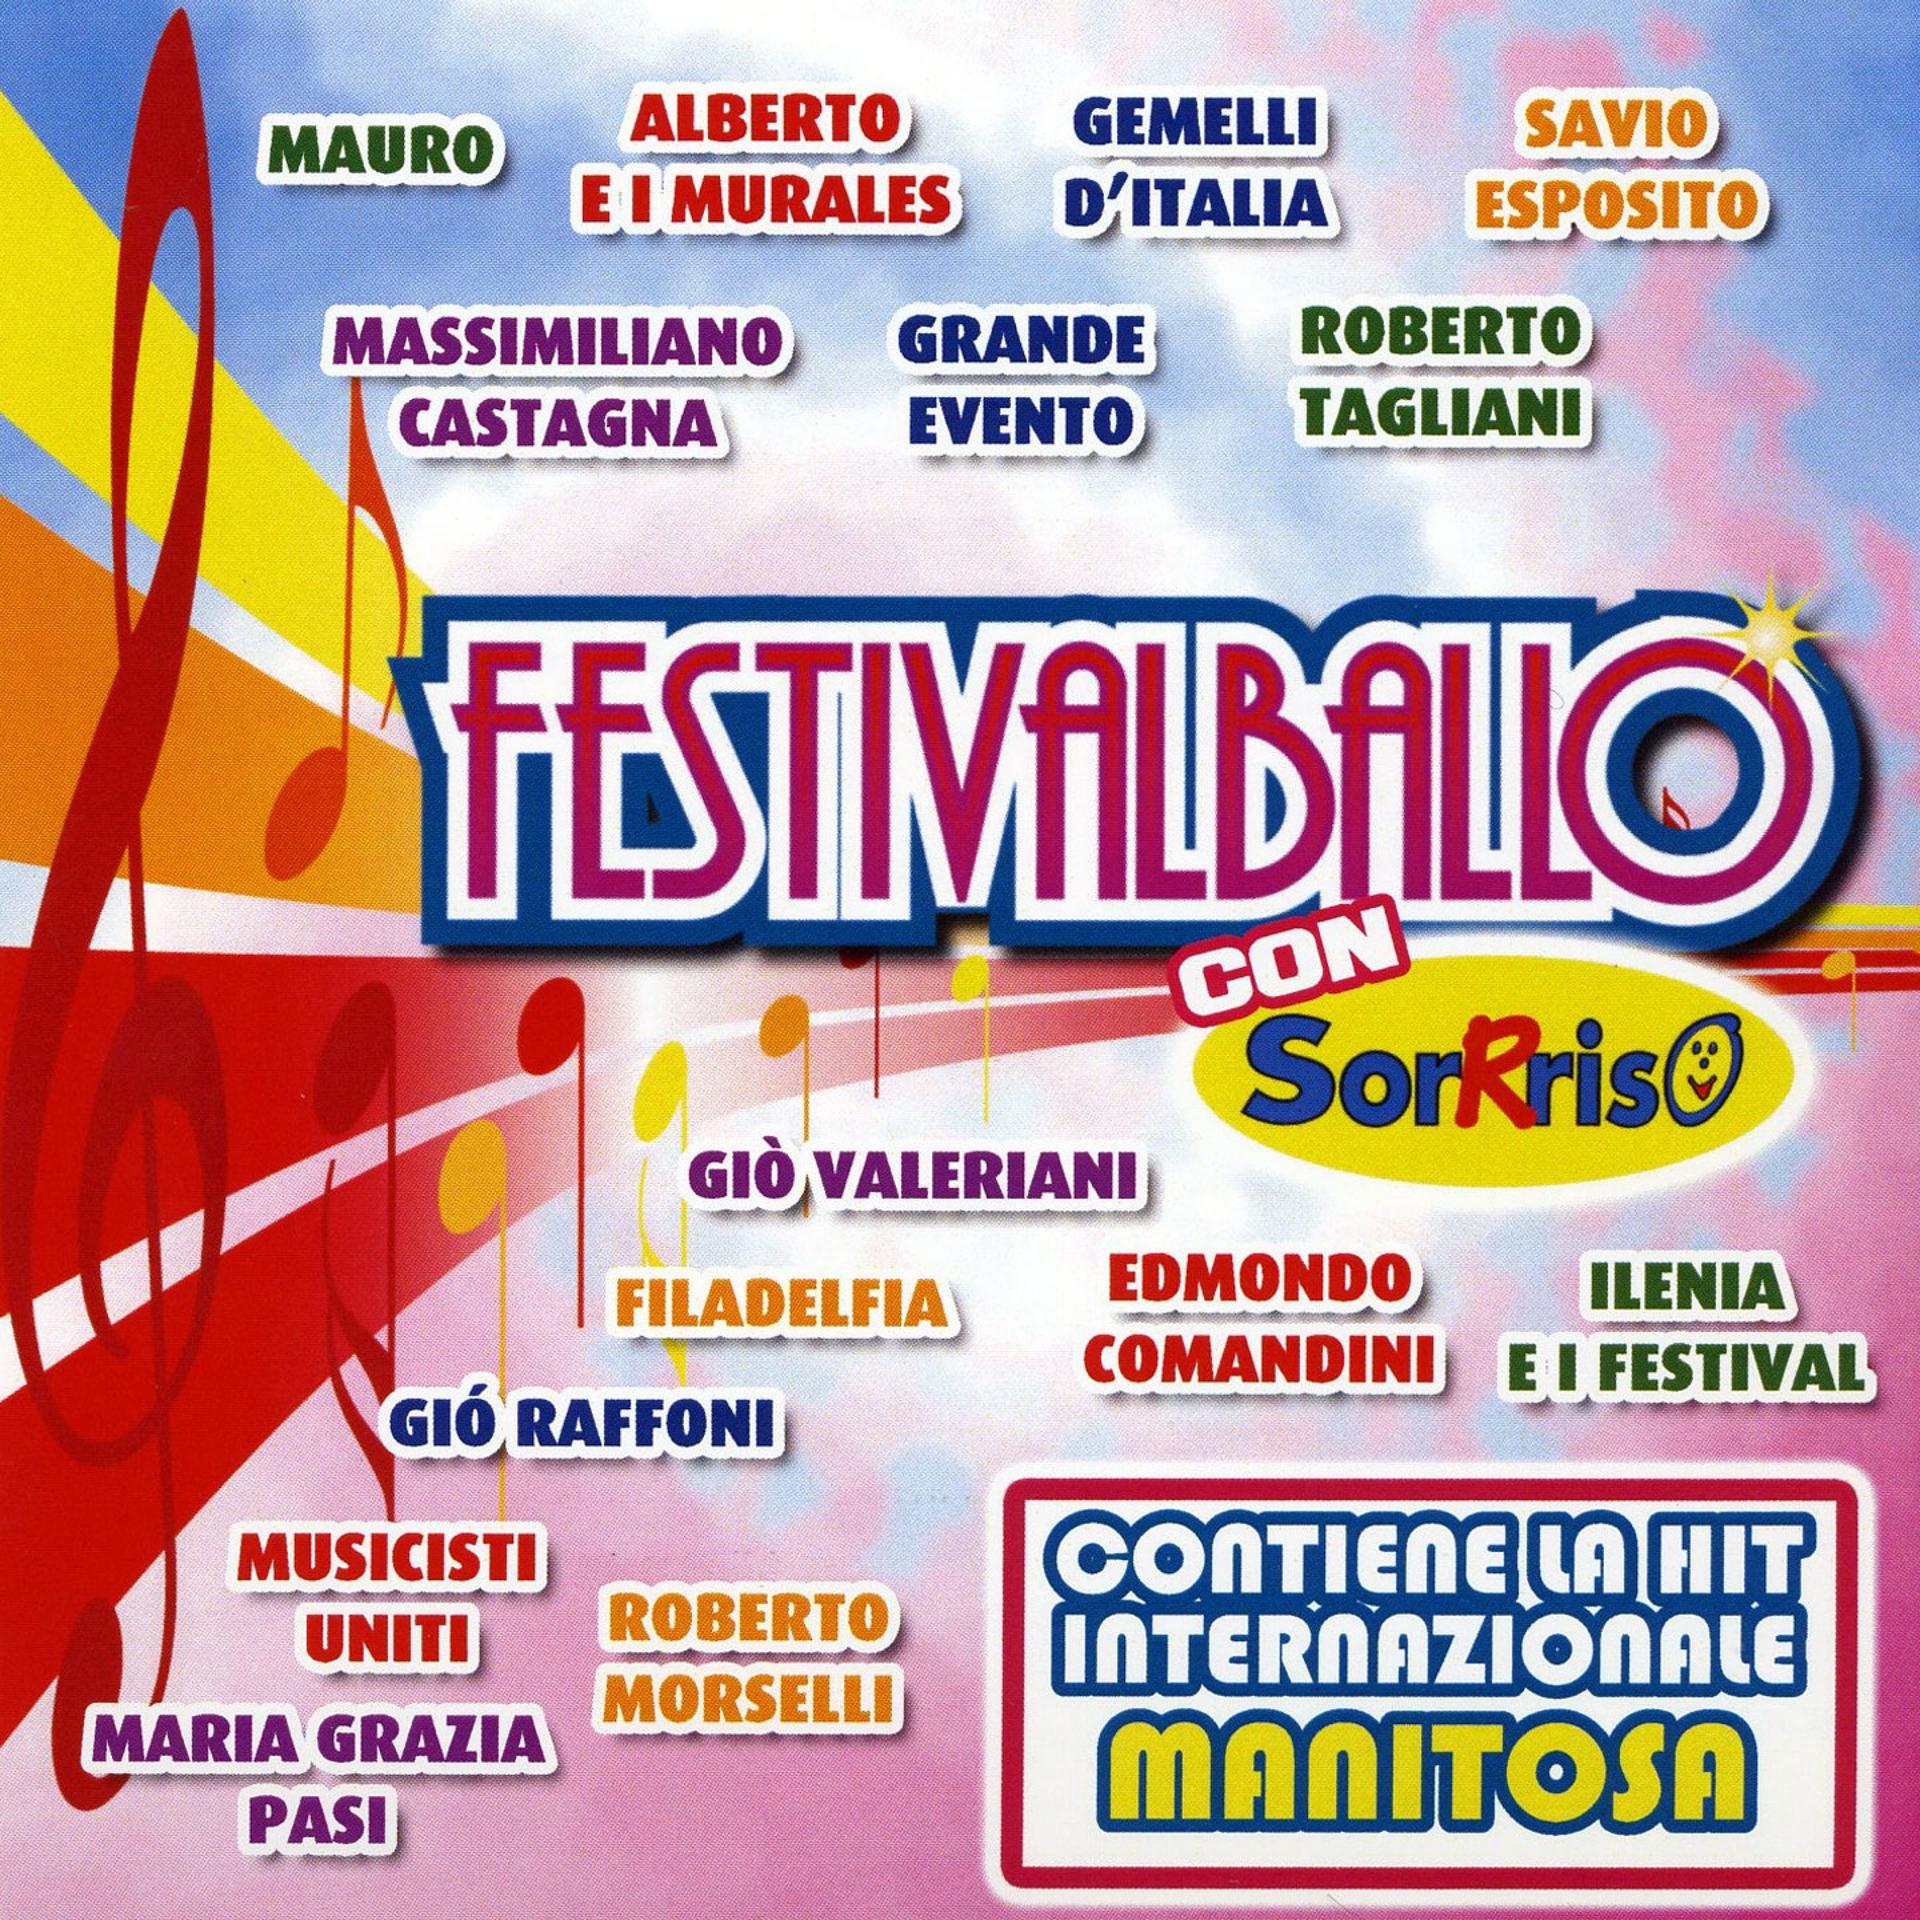 Постер альбома Festivalballo con sorriso